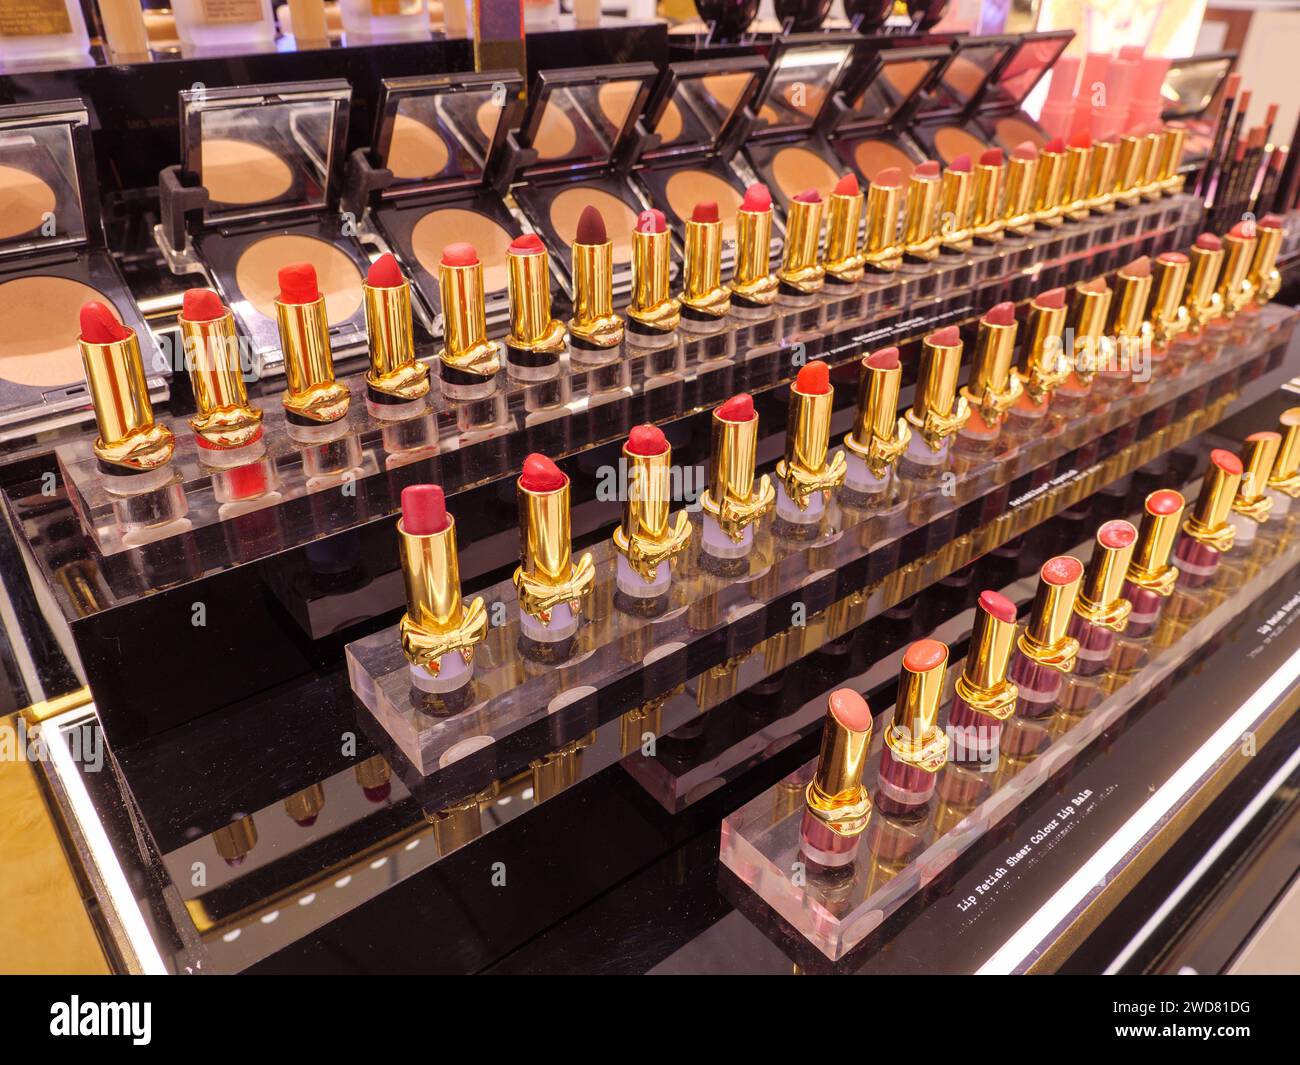 Farbreihen von rotem Lippenstift-Make-up auf der Kosmetiktheke einer Schönheitskonzession des Kaufhauses Selfridges Stockfoto